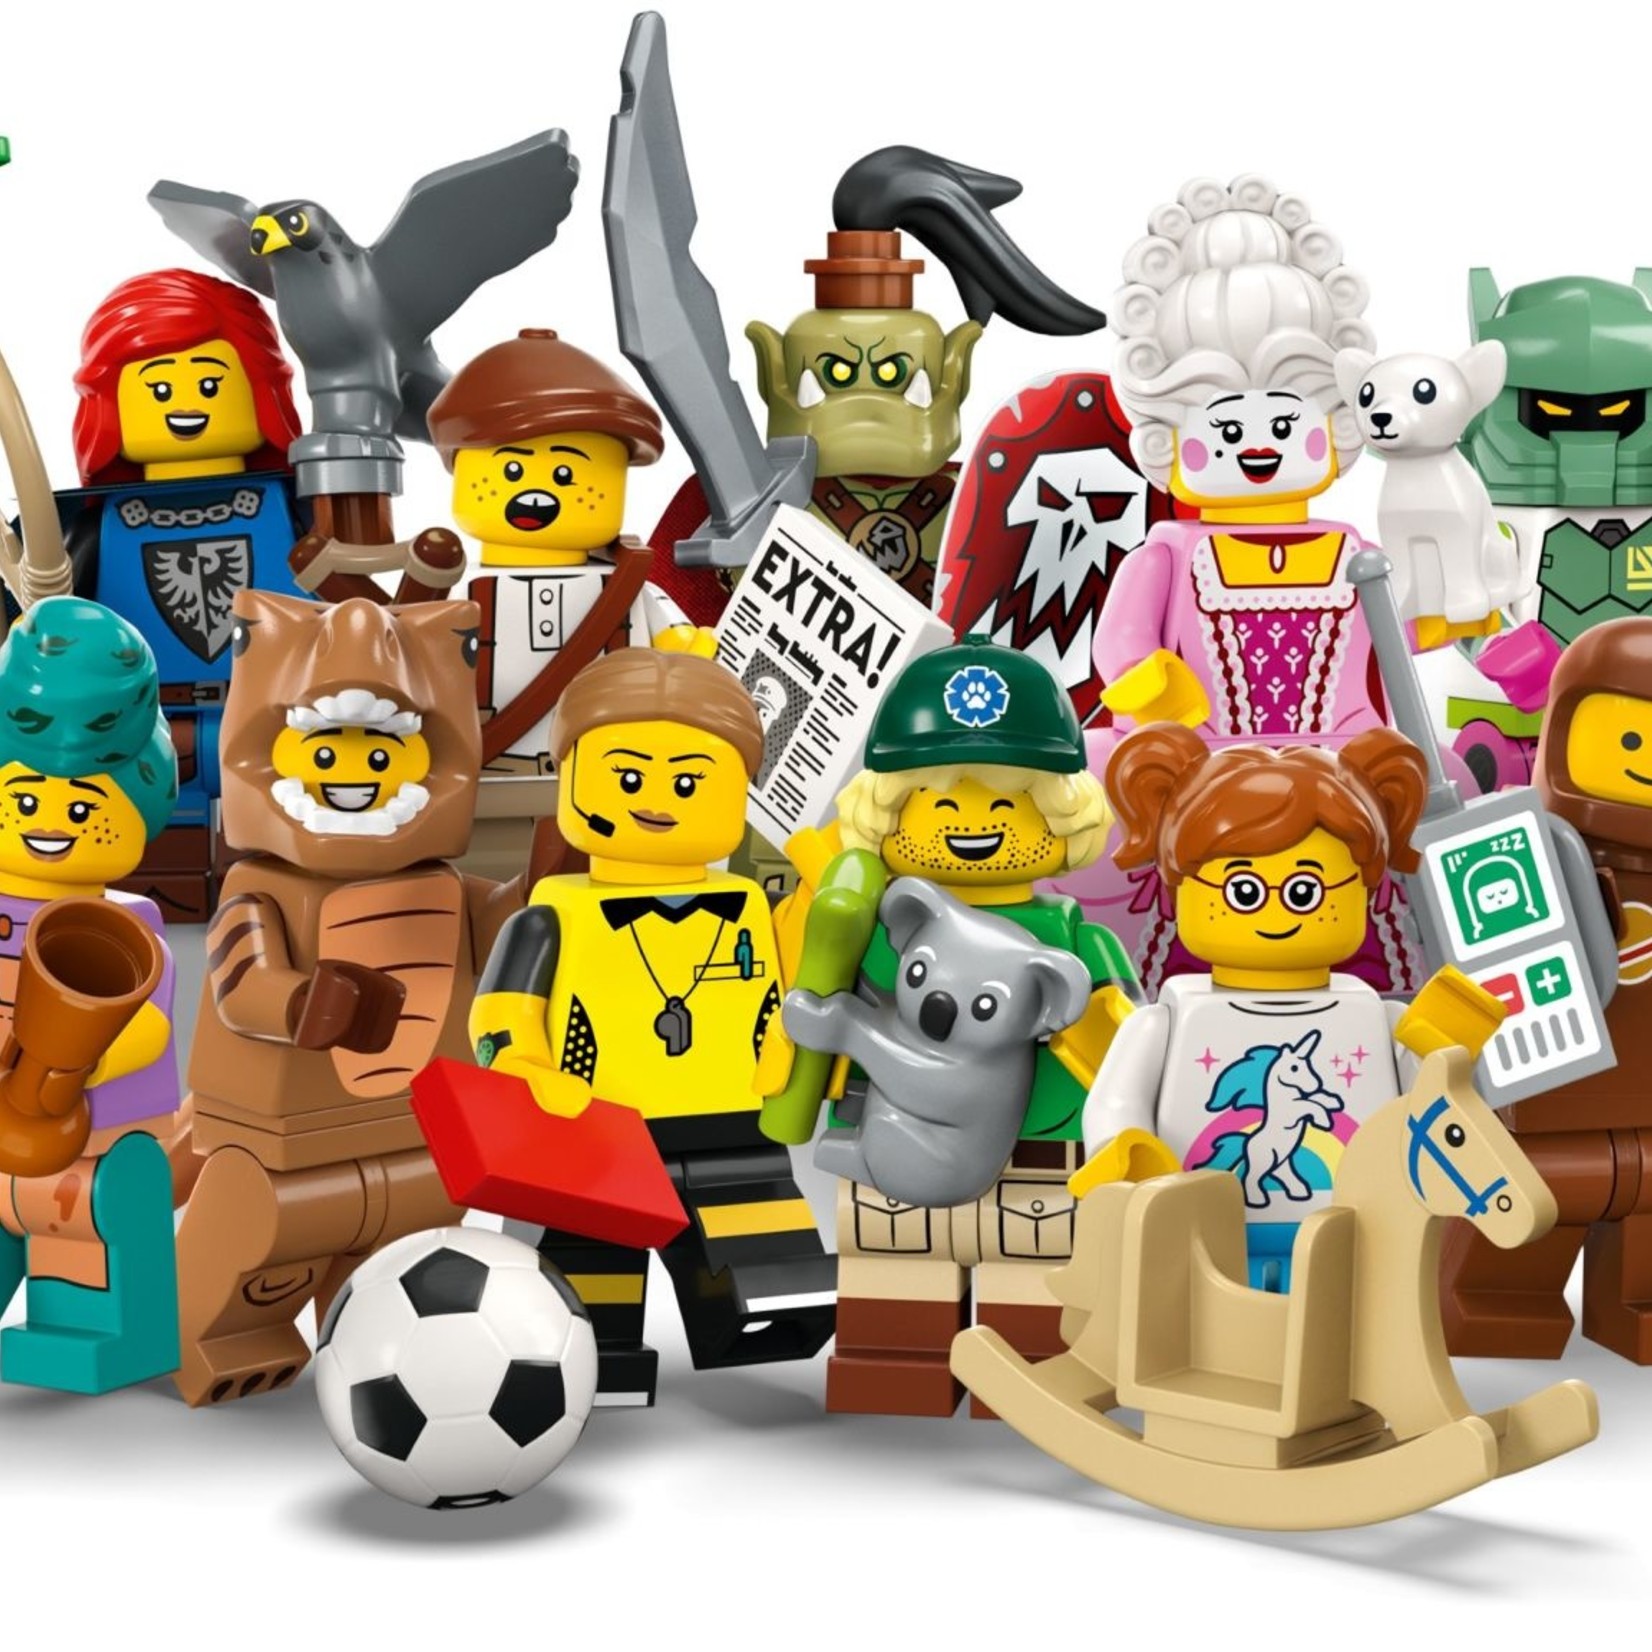 Lego Lego 71037 Minifigures - Series 24